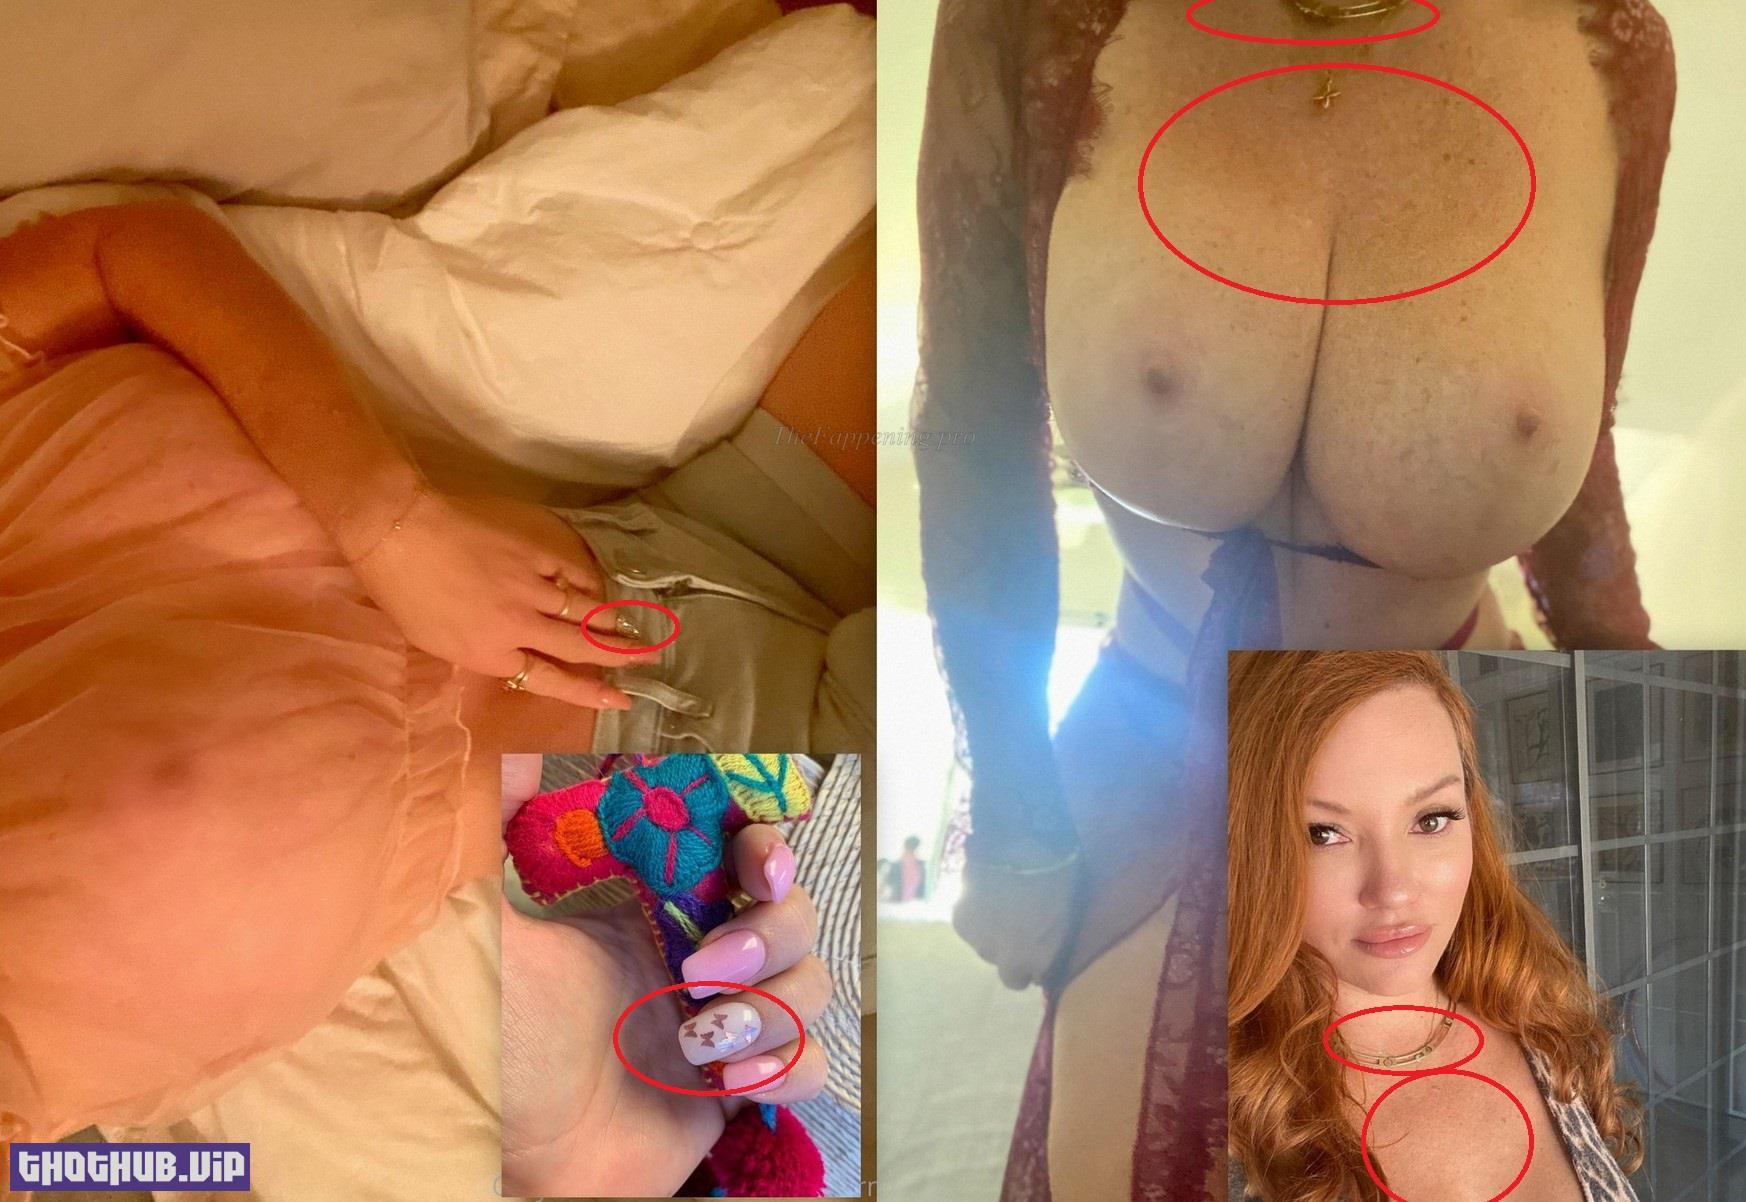 Tamara Thorne Nude Leaked + Proofs